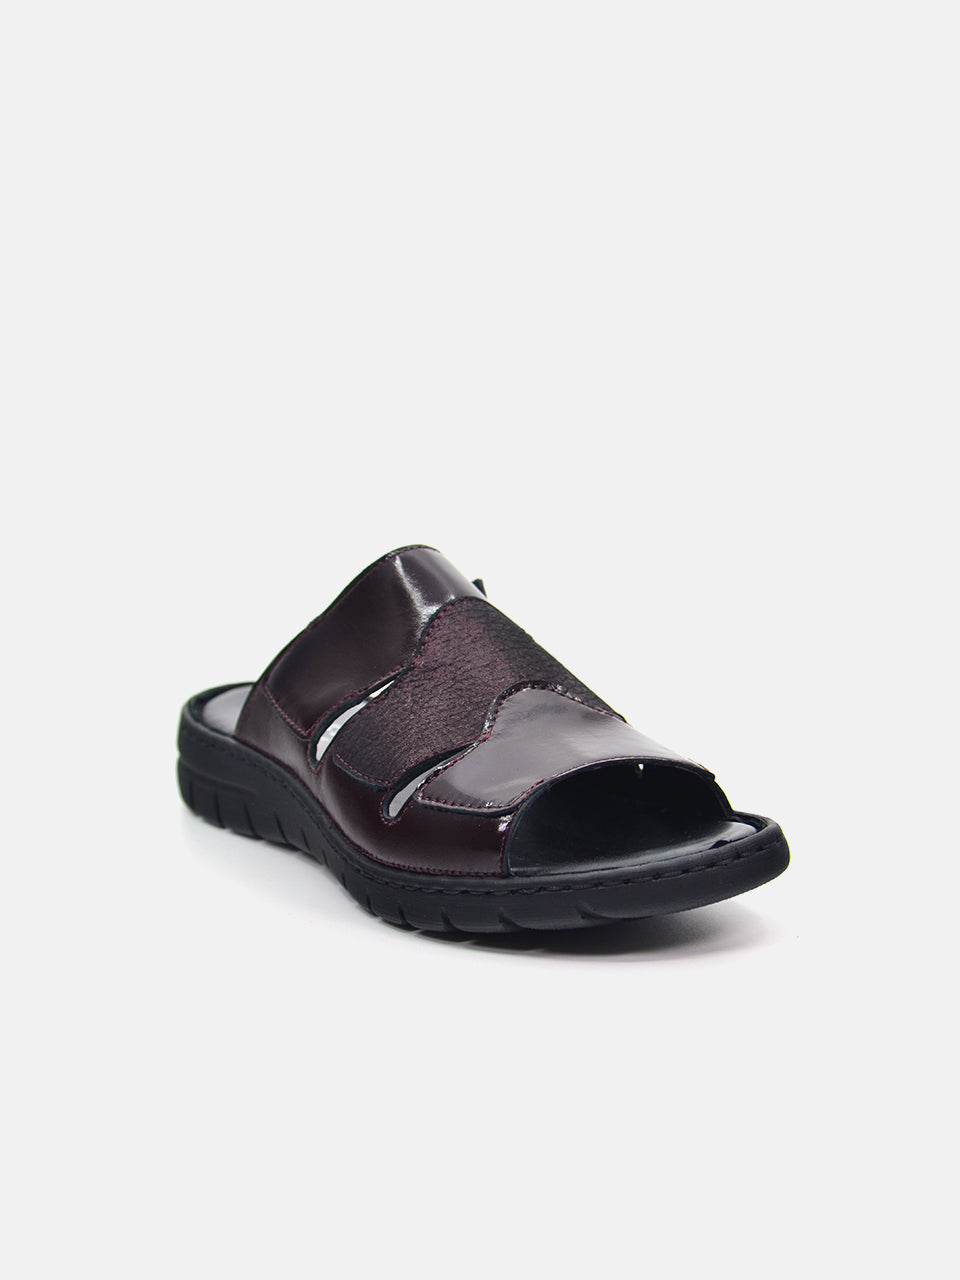 Josef Seibel Women's Slider Sandals #color_Maroon